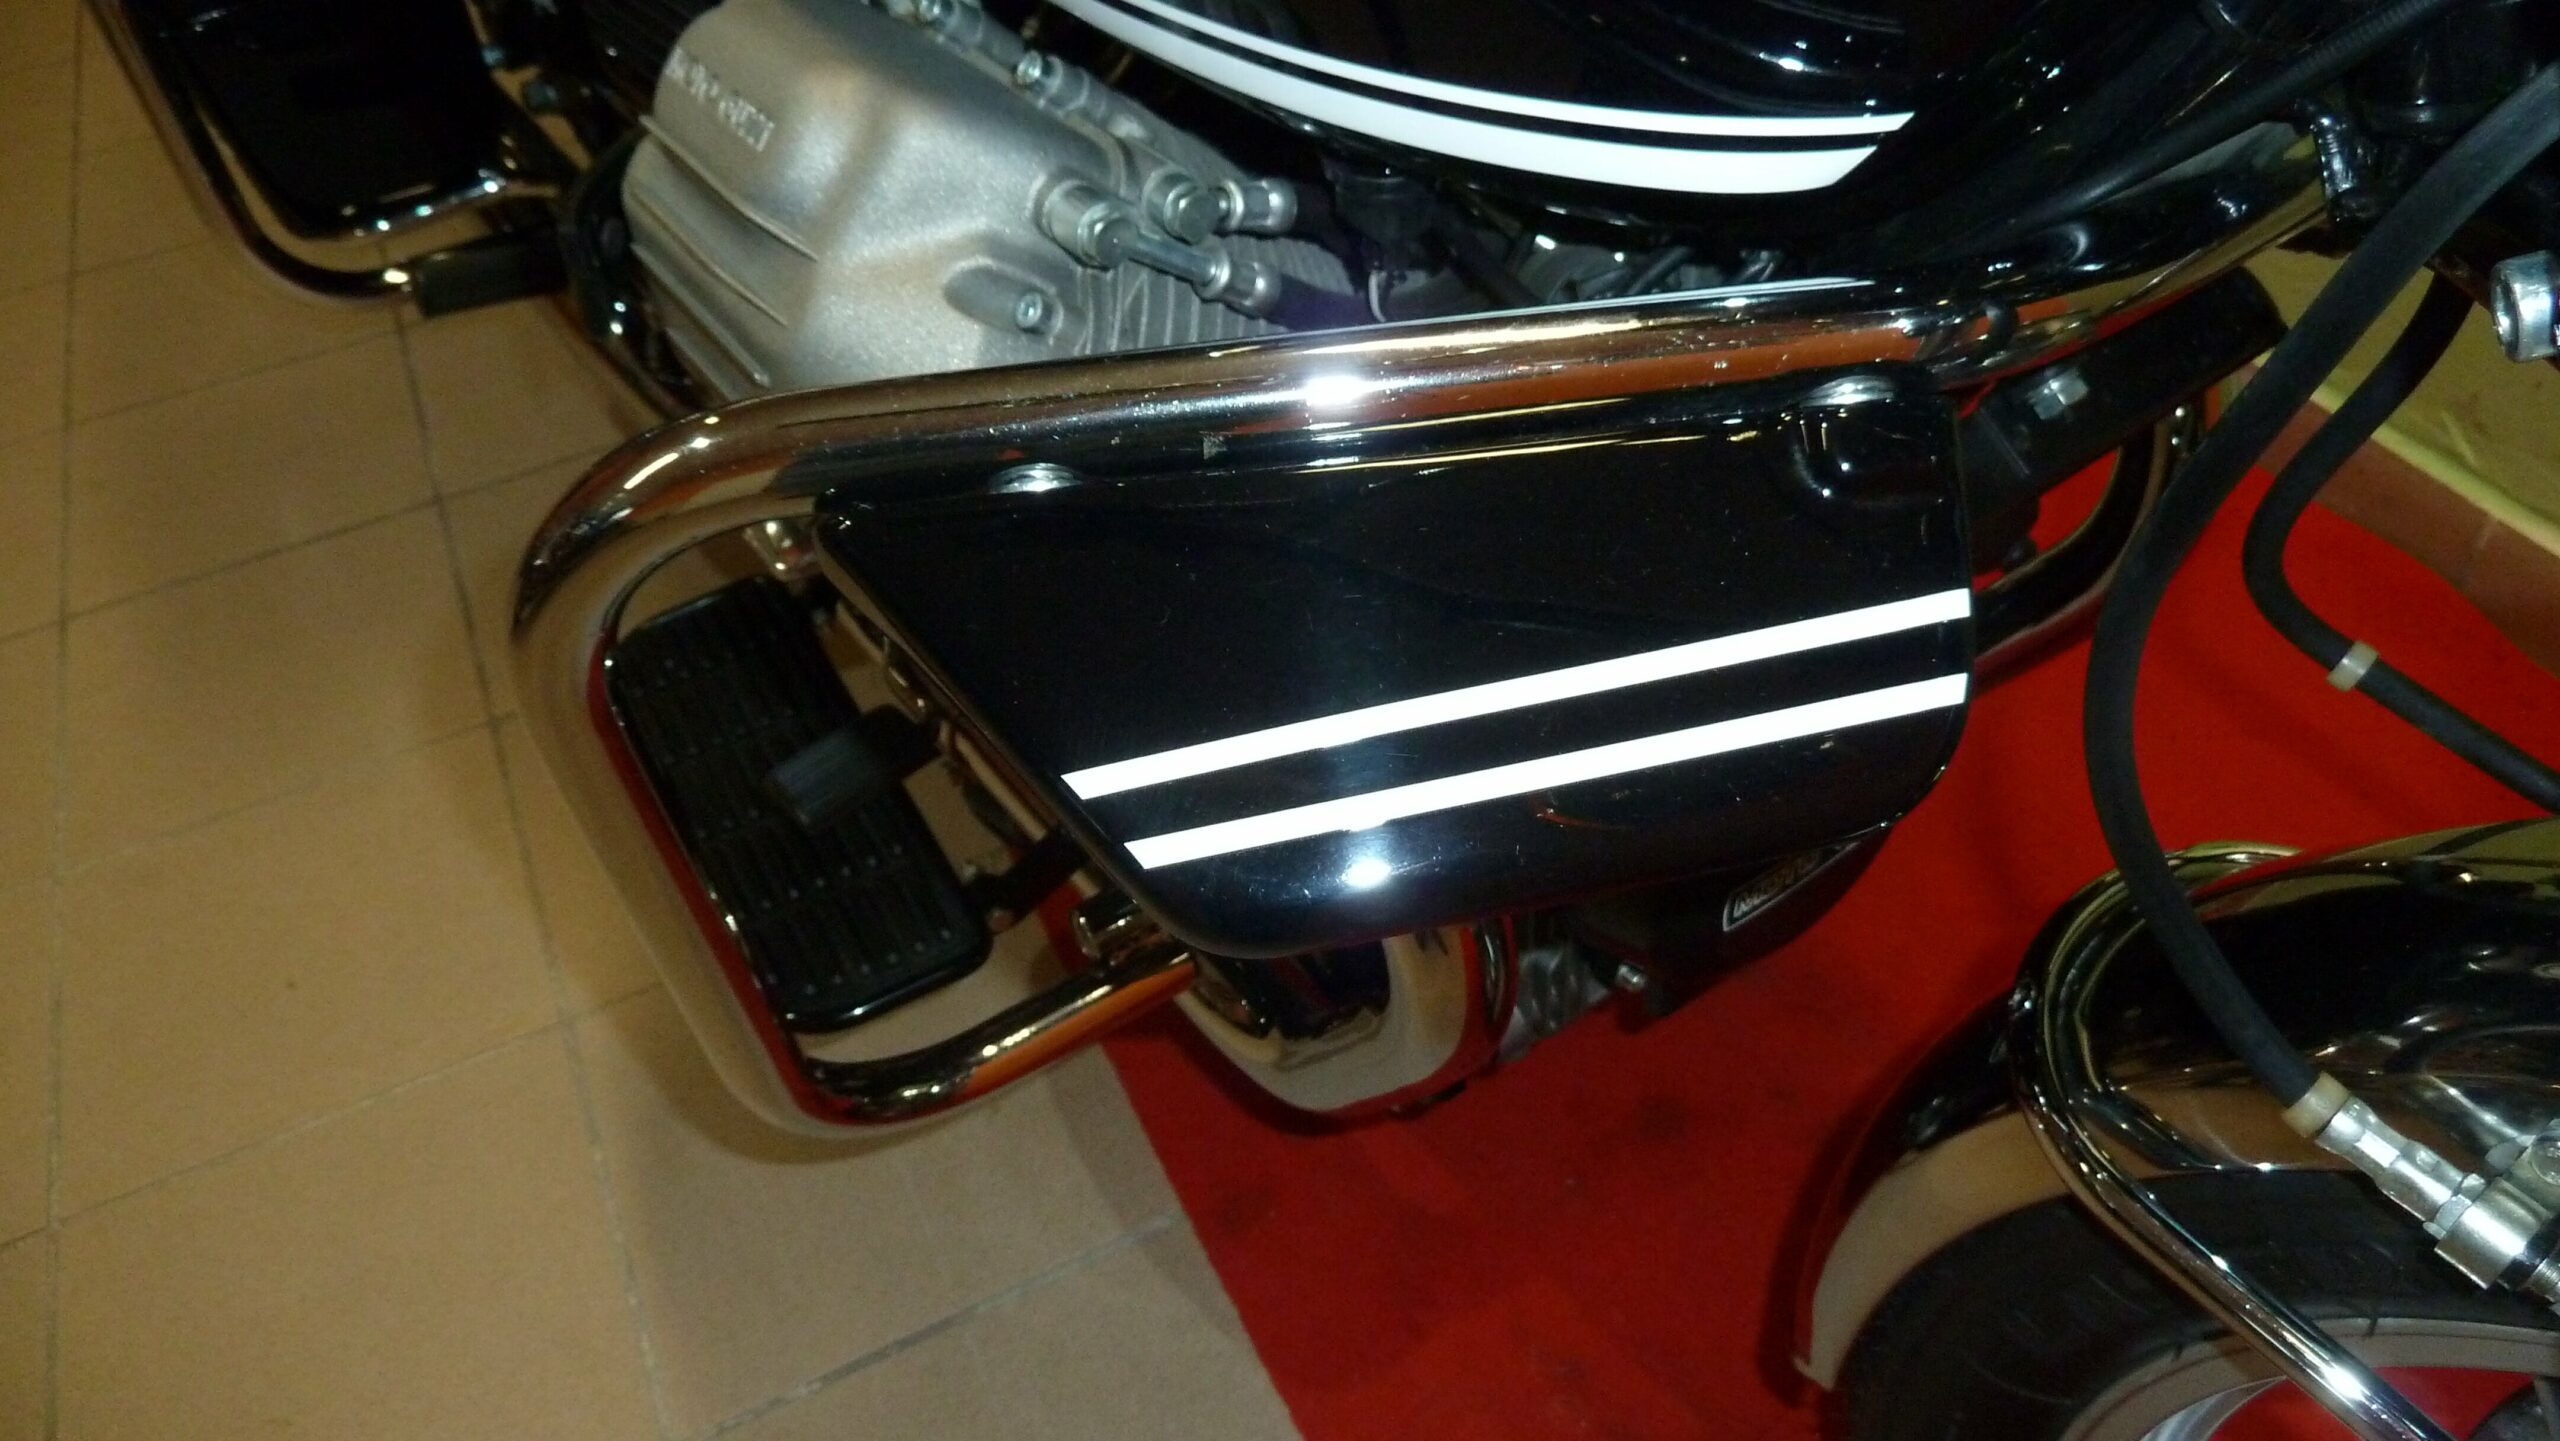 Moto Guzzi V1000 I-Convert